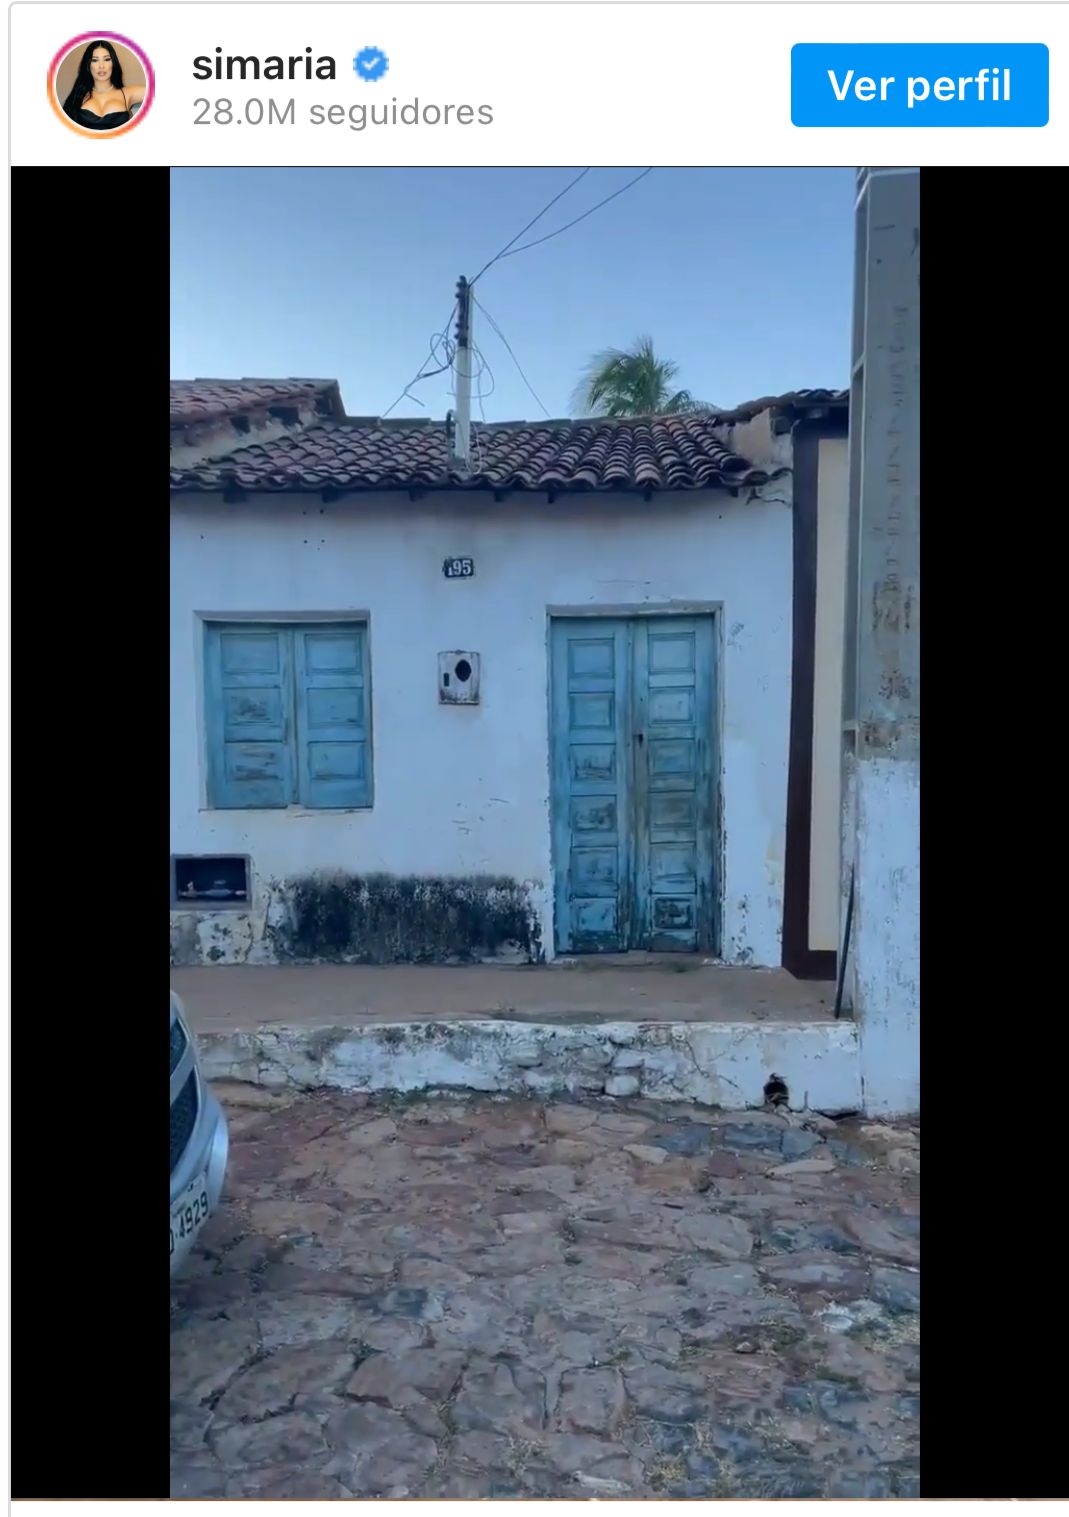 Uma das casas humiles que a cantora Simaria morou em sua infância - Foto Reprodução Instagram